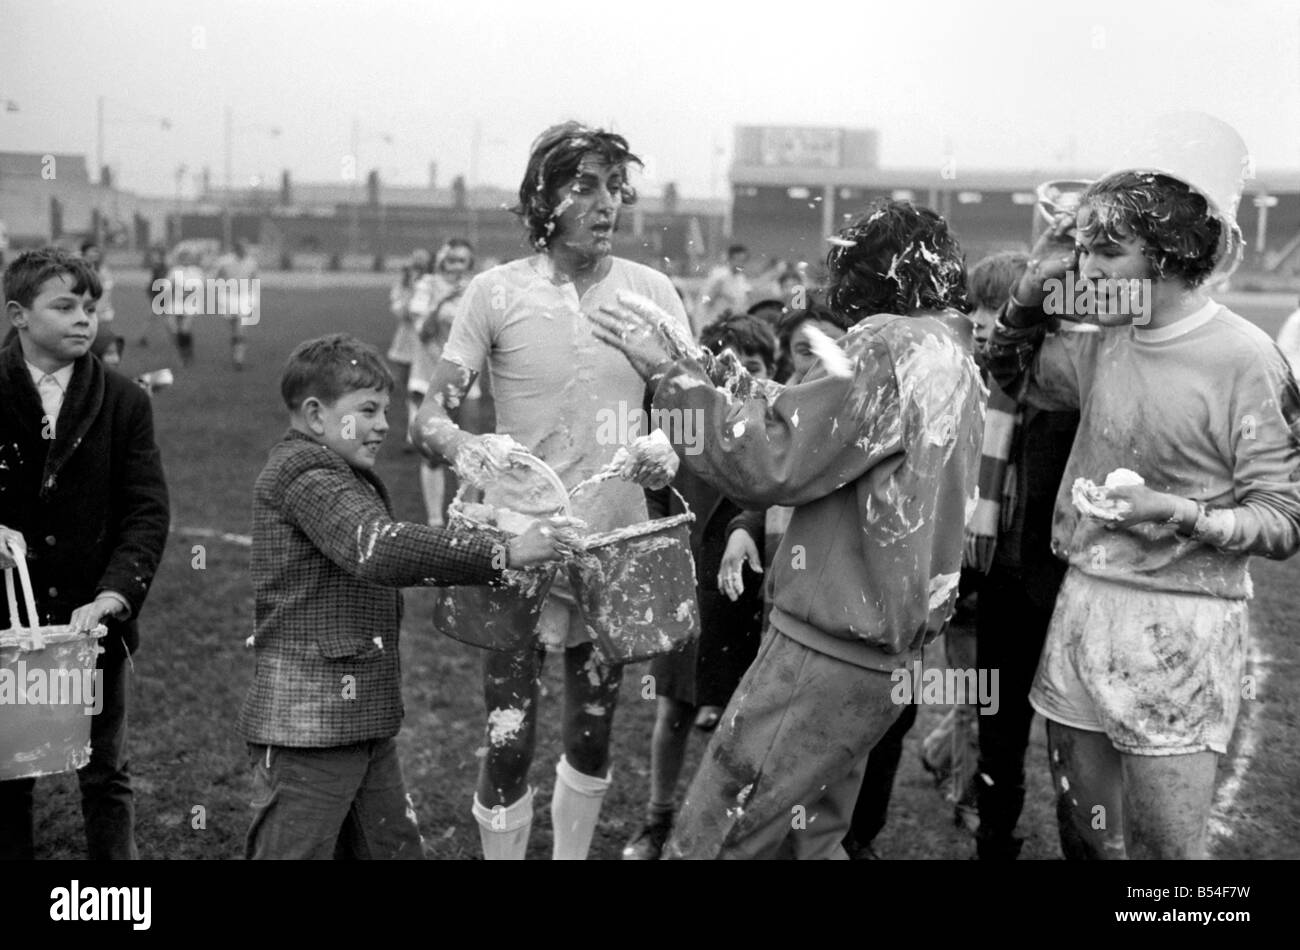 . Les joueurs visés à l'eau savonneuse pendant un match de football de bienfaisance. Novembre 1969 Z11133 Banque D'Images